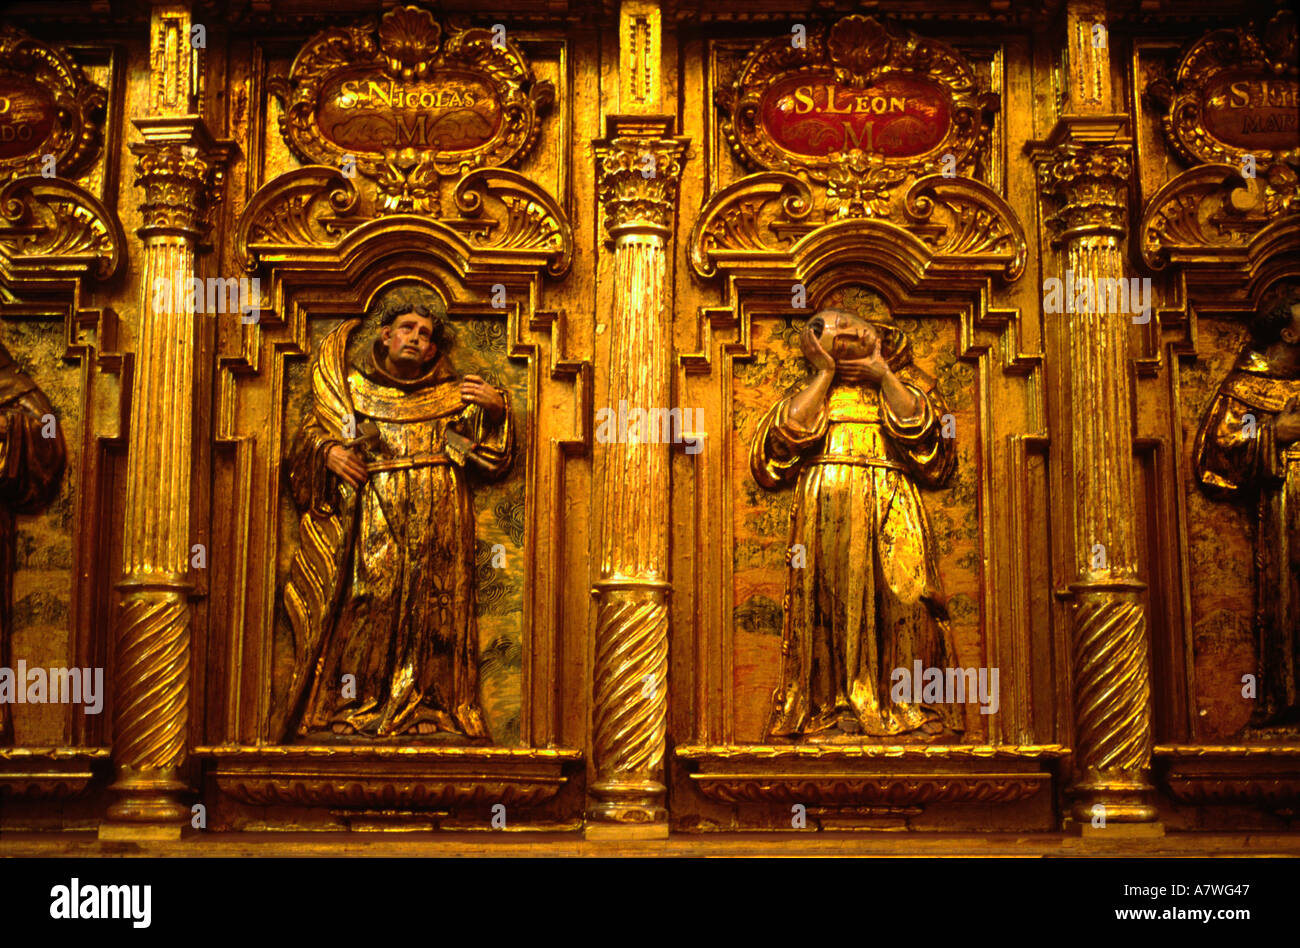 Riccamente intagliato interni in legno del XVII secolo San Francisco monastero raffigurante un monaco che è stato decapitato Foto Stock